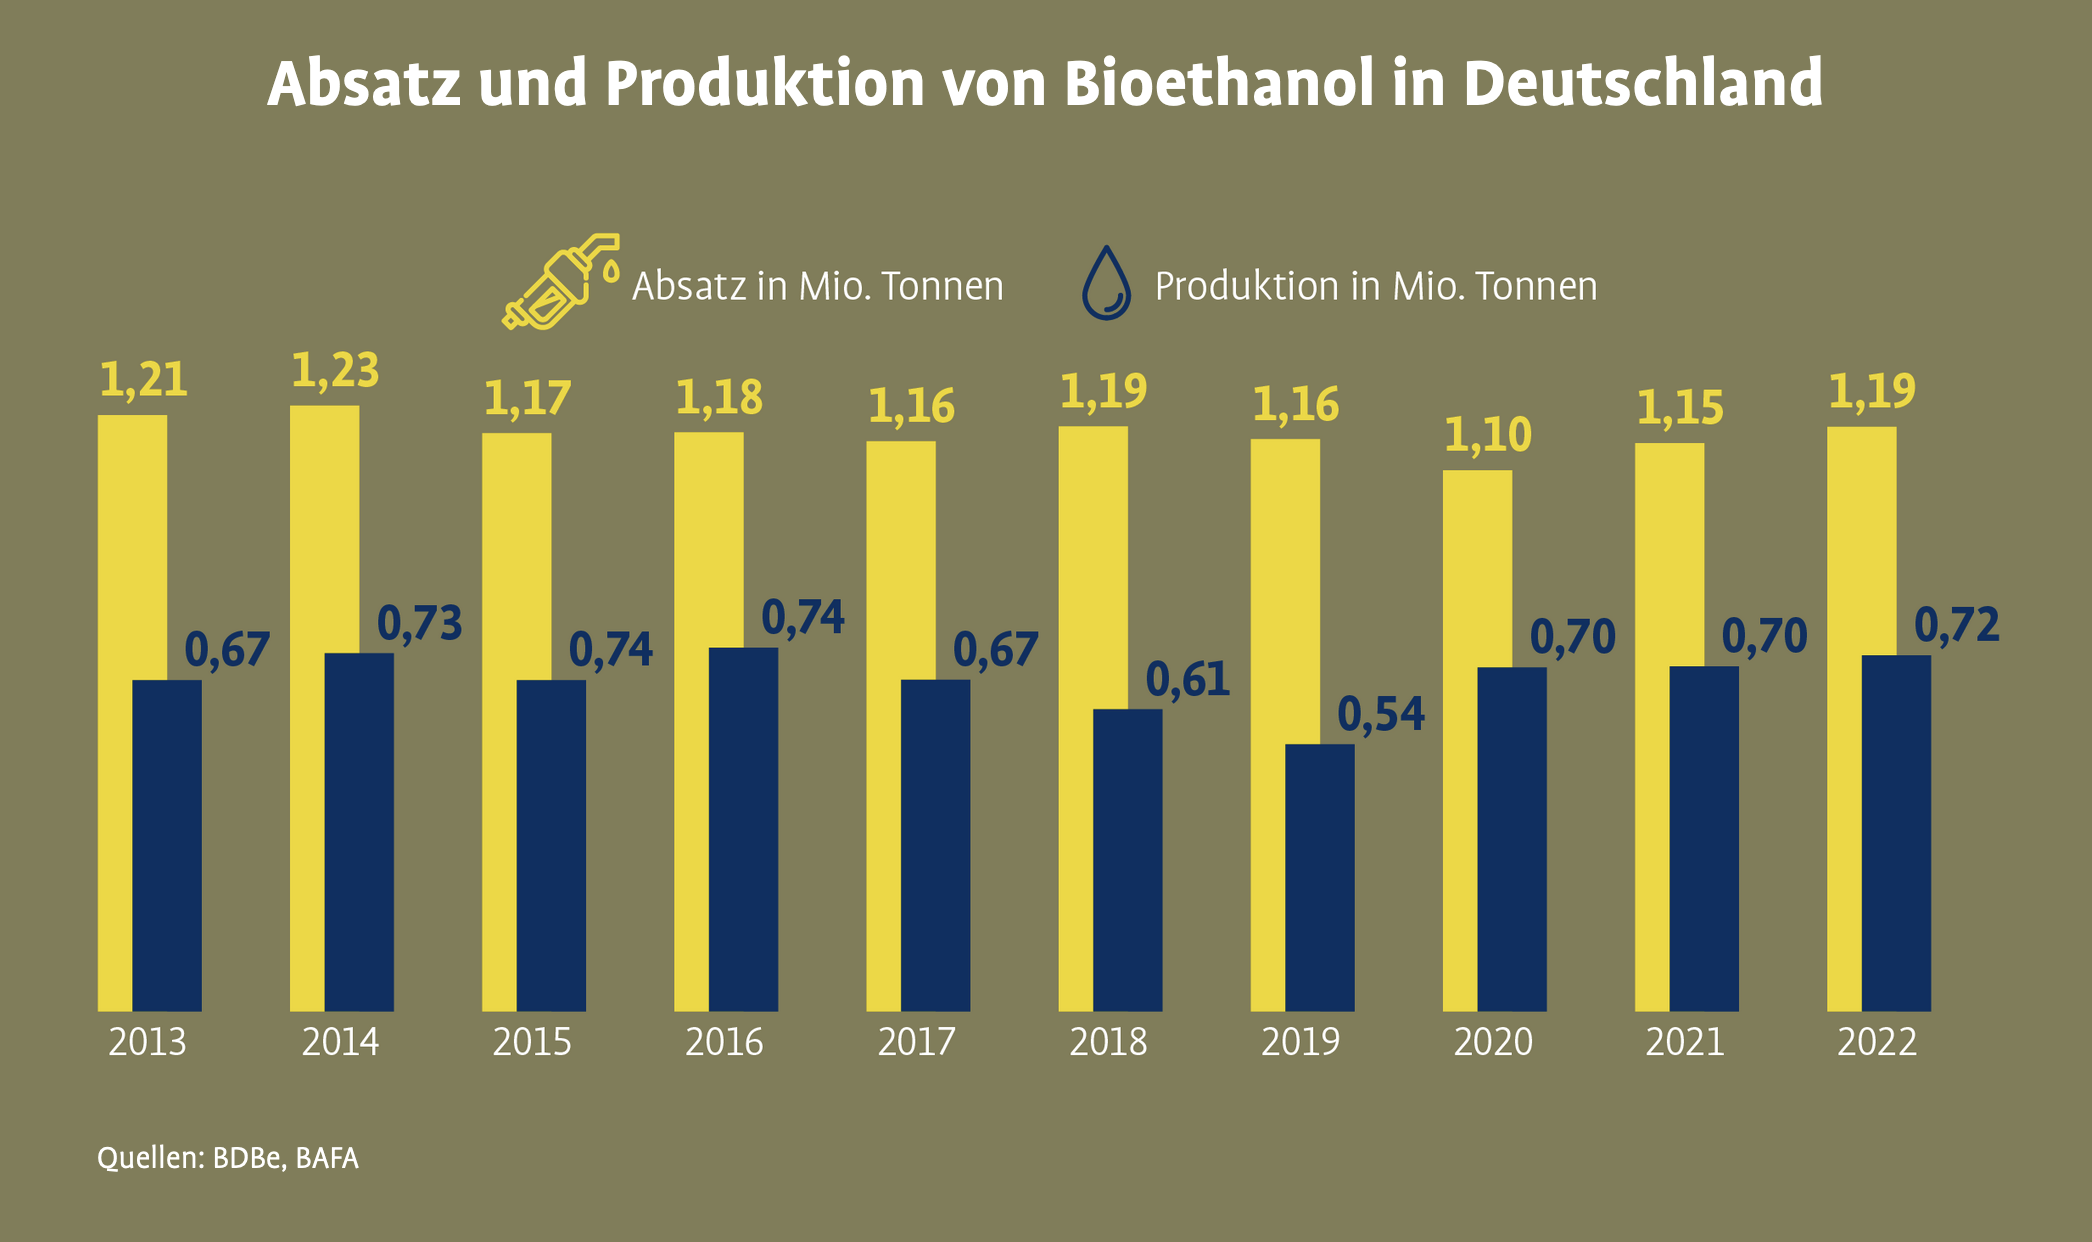 Absatz und Produktion von Bioethanol in Deutschland